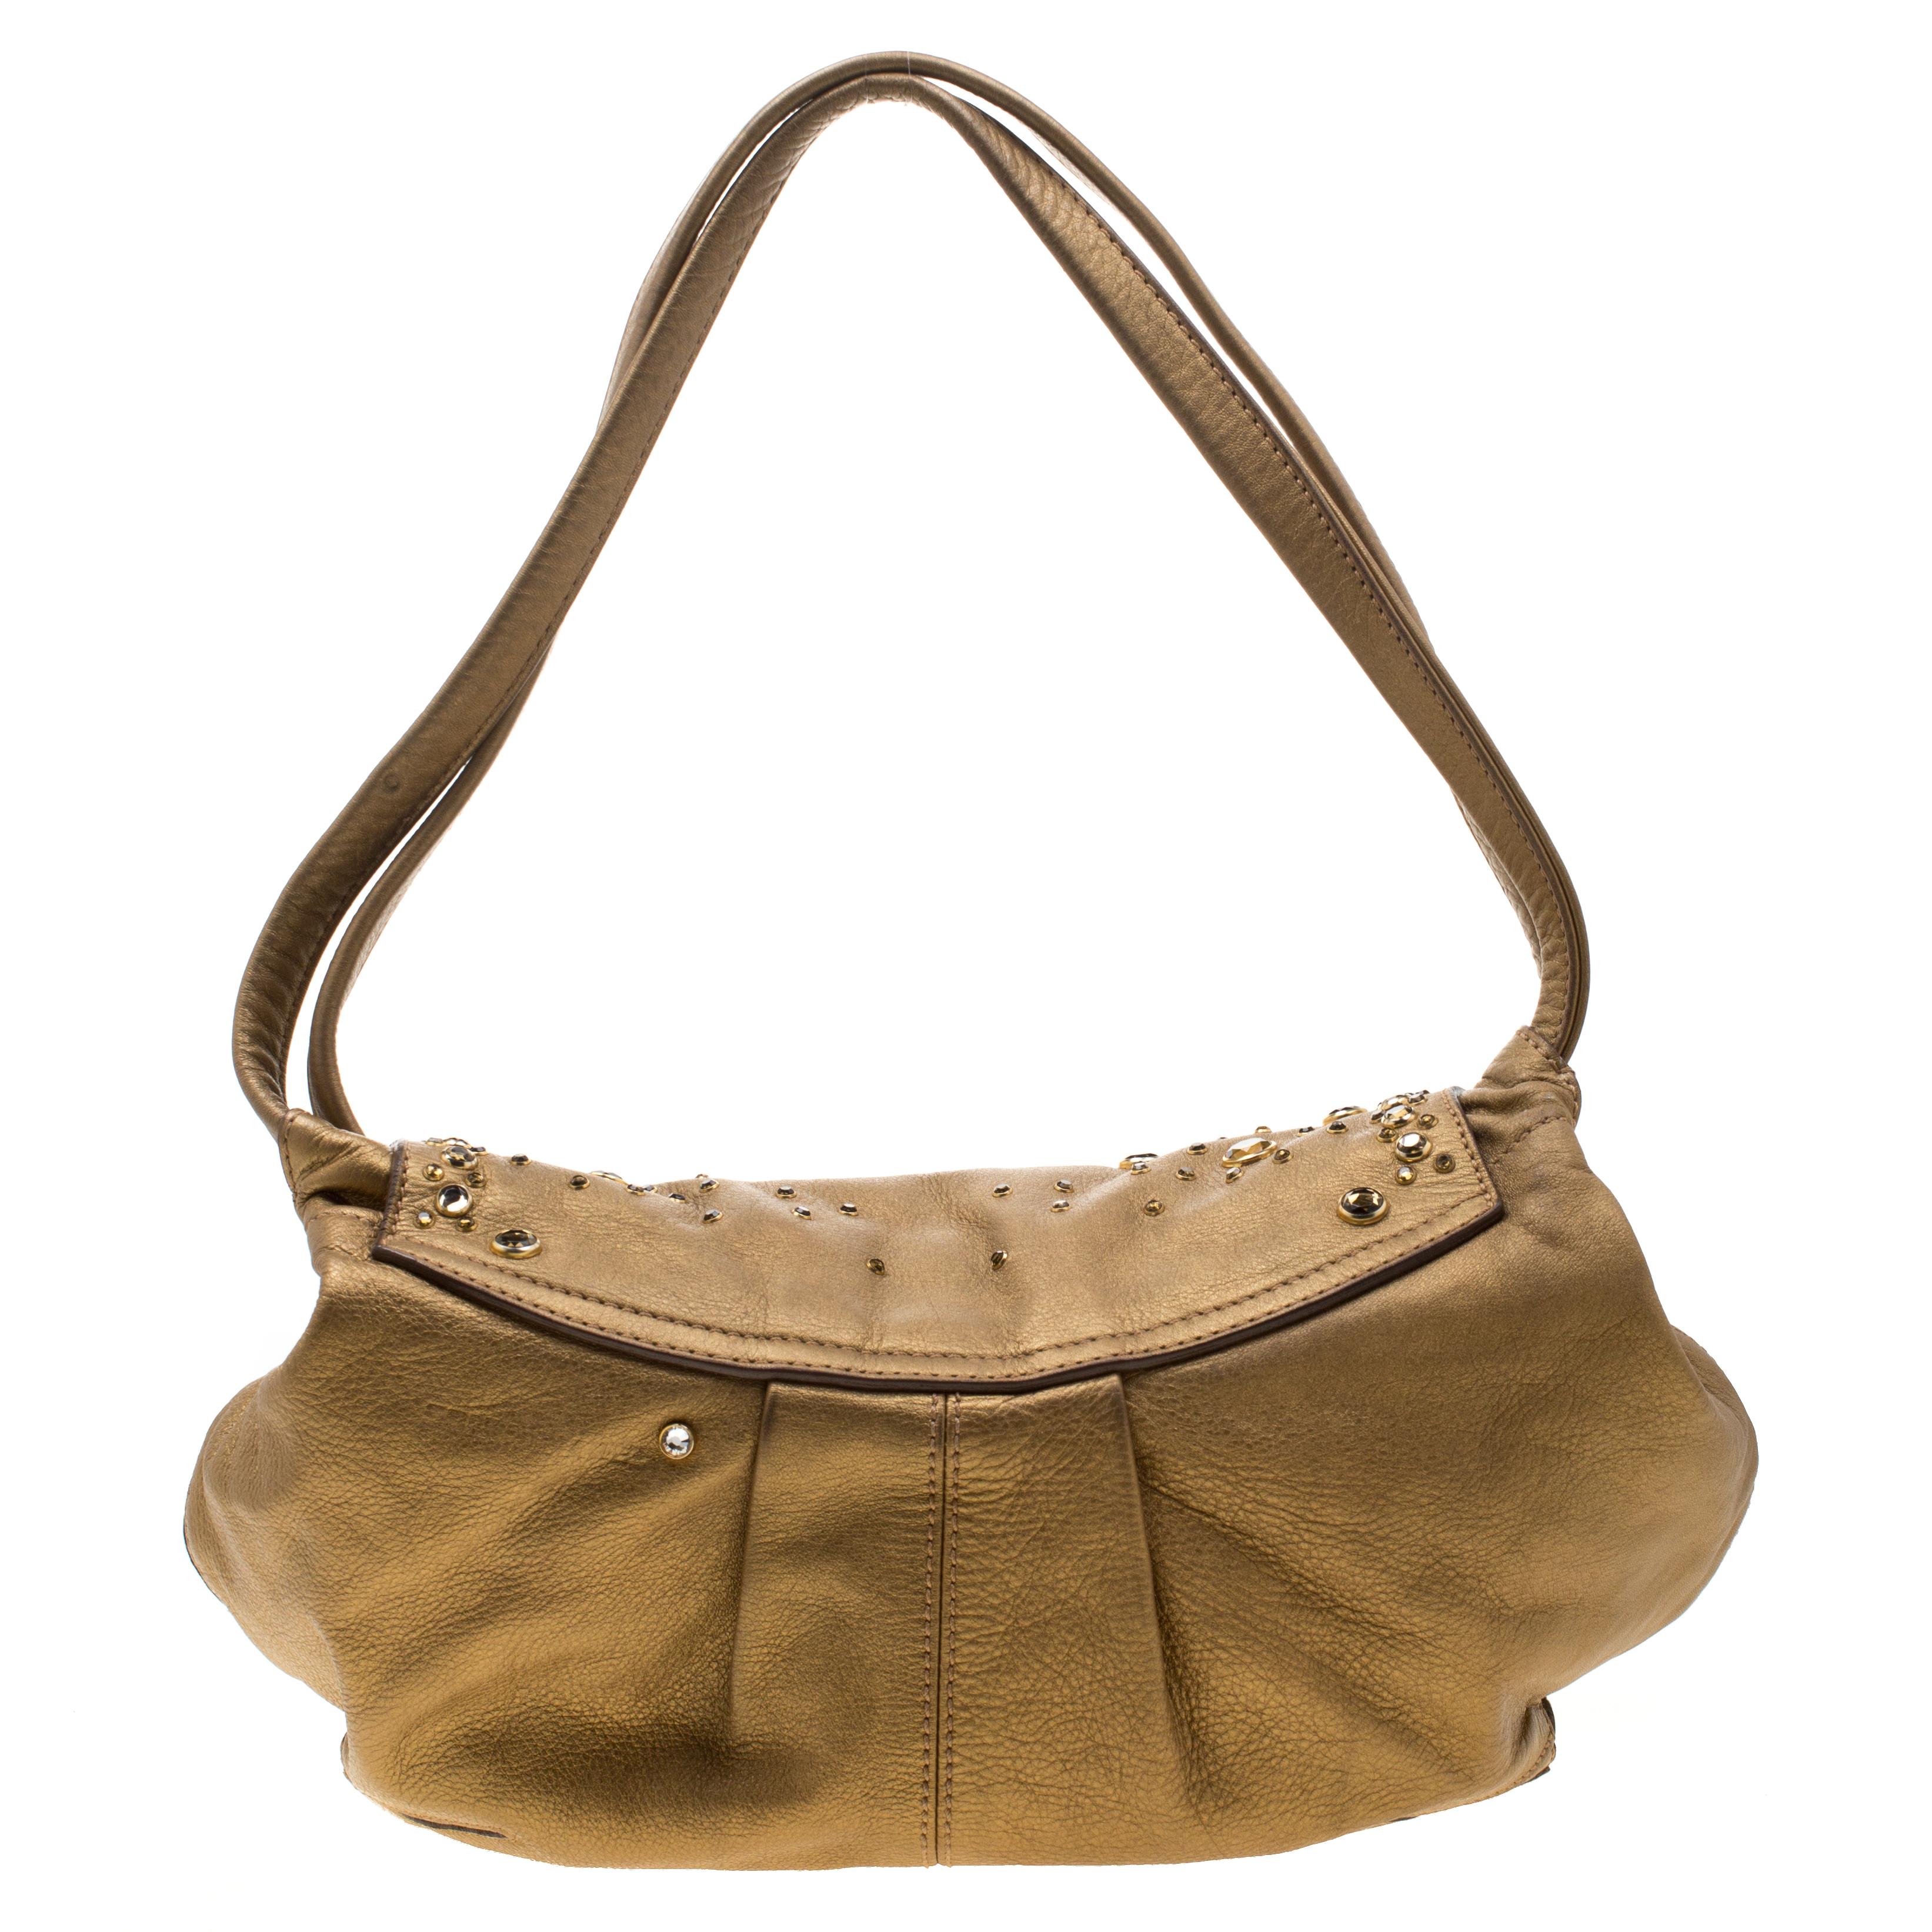 Diese schicke und feminine Tasche in Beige ist von Sonia Rykiel. Die Tasche ist aus goldfarbenem Metallic-Leder gefertigt und verfügt über eine mit Nieten besetzte Klappe, die sich zu einem mit Stoff gefütterten Innenraum öffnet, der Platz für Ihre